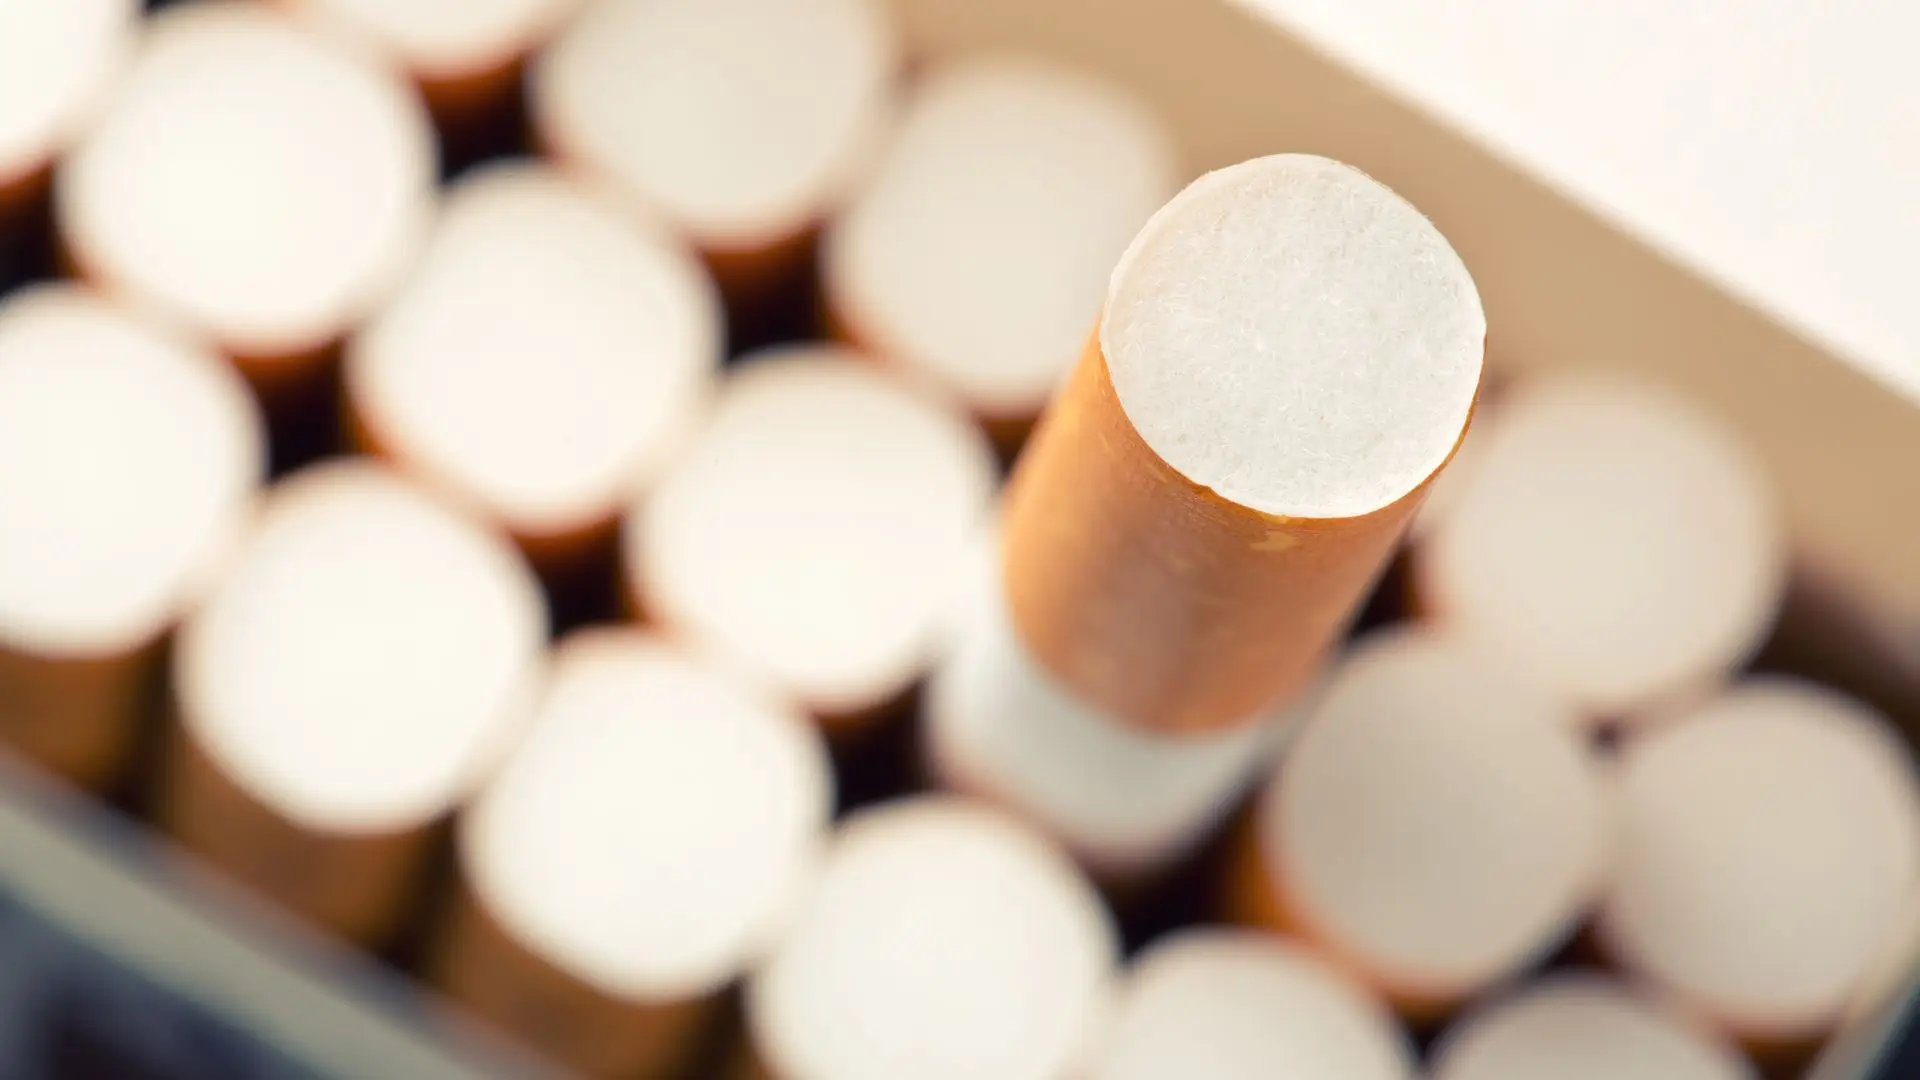 Proibição de venda de tabaco nos postos de combustíveis? "Não aceitamos"